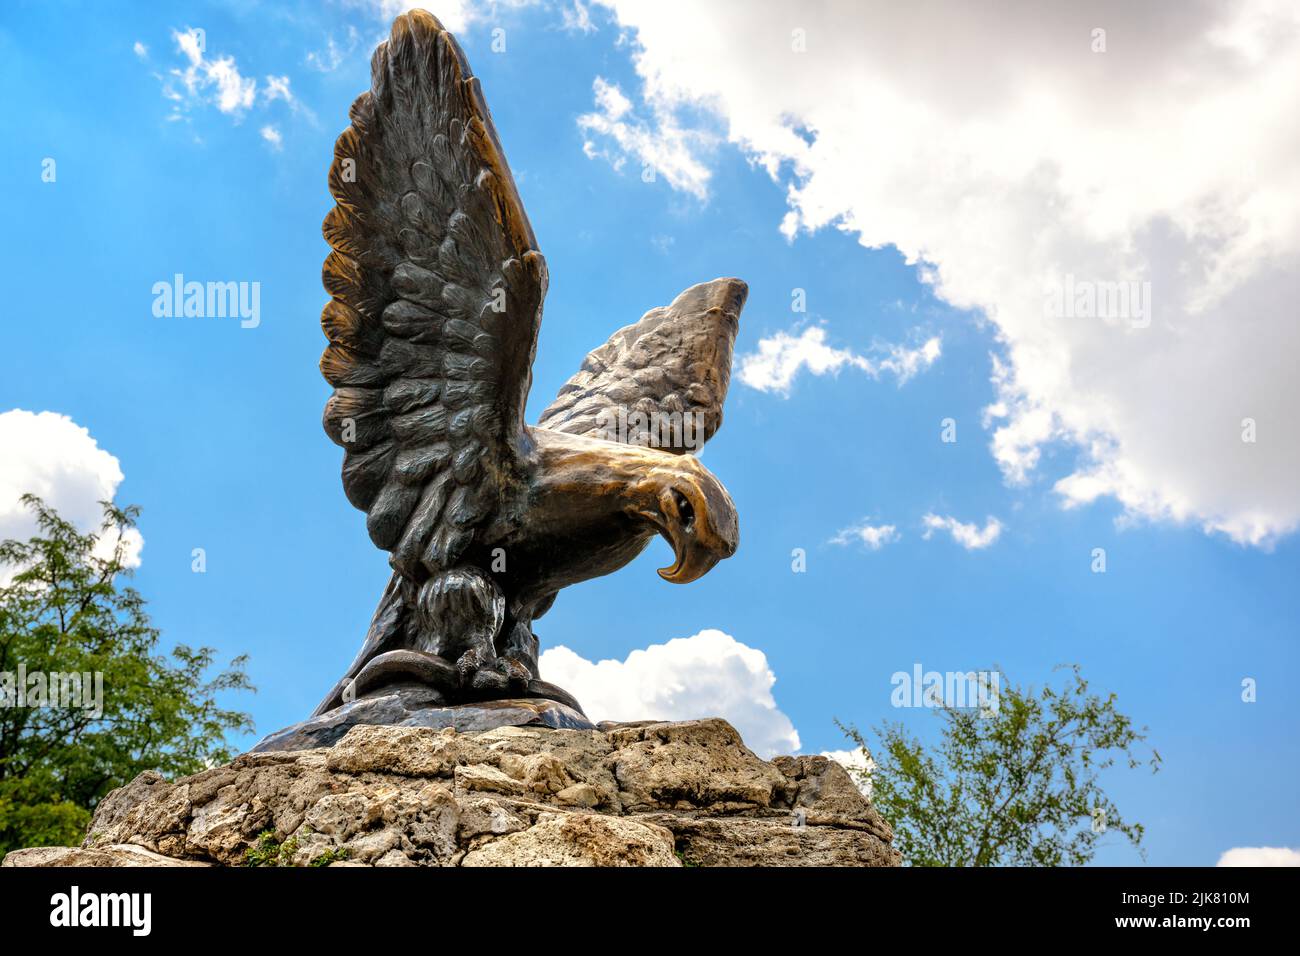 Sculpture d'aigle à Pyatigorsk, Stavropol Krai, Russie. Paysage de ville historique, ancien symbole de Pyatigorsk installé en 1901. Statue de bronze Banque D'Images